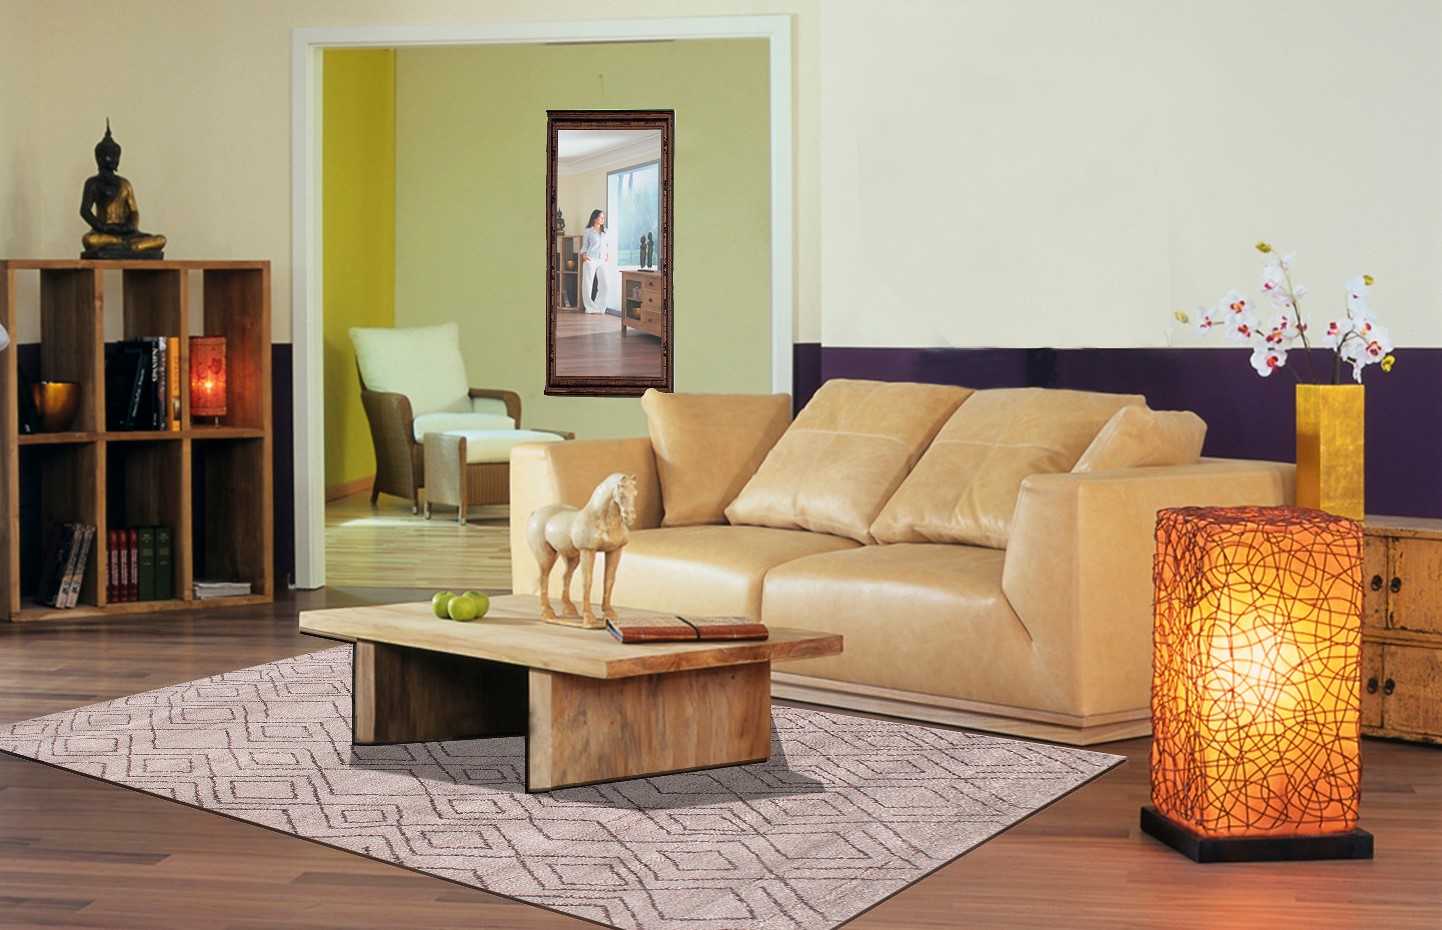 Можно гармонично сочетать современную мебель с марокканским декором в интерьере